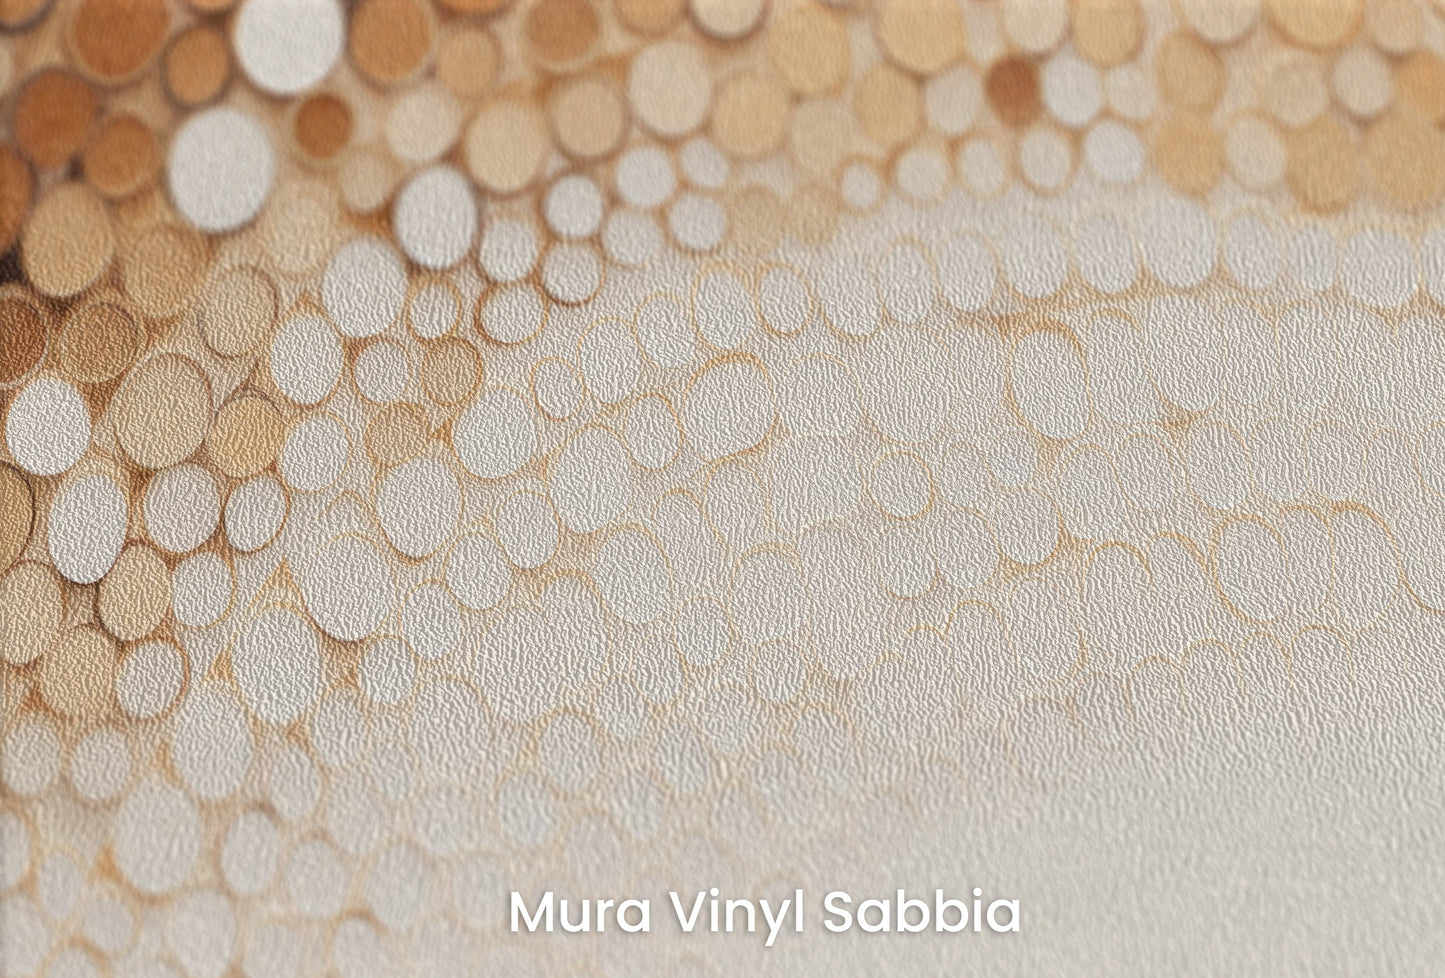 Zbliżenie na artystyczną fototapetę o nazwie RUSTIC COFFEE TONES CASCADE na podłożu Mura Vinyl Sabbia struktura grubego ziarna piasku.